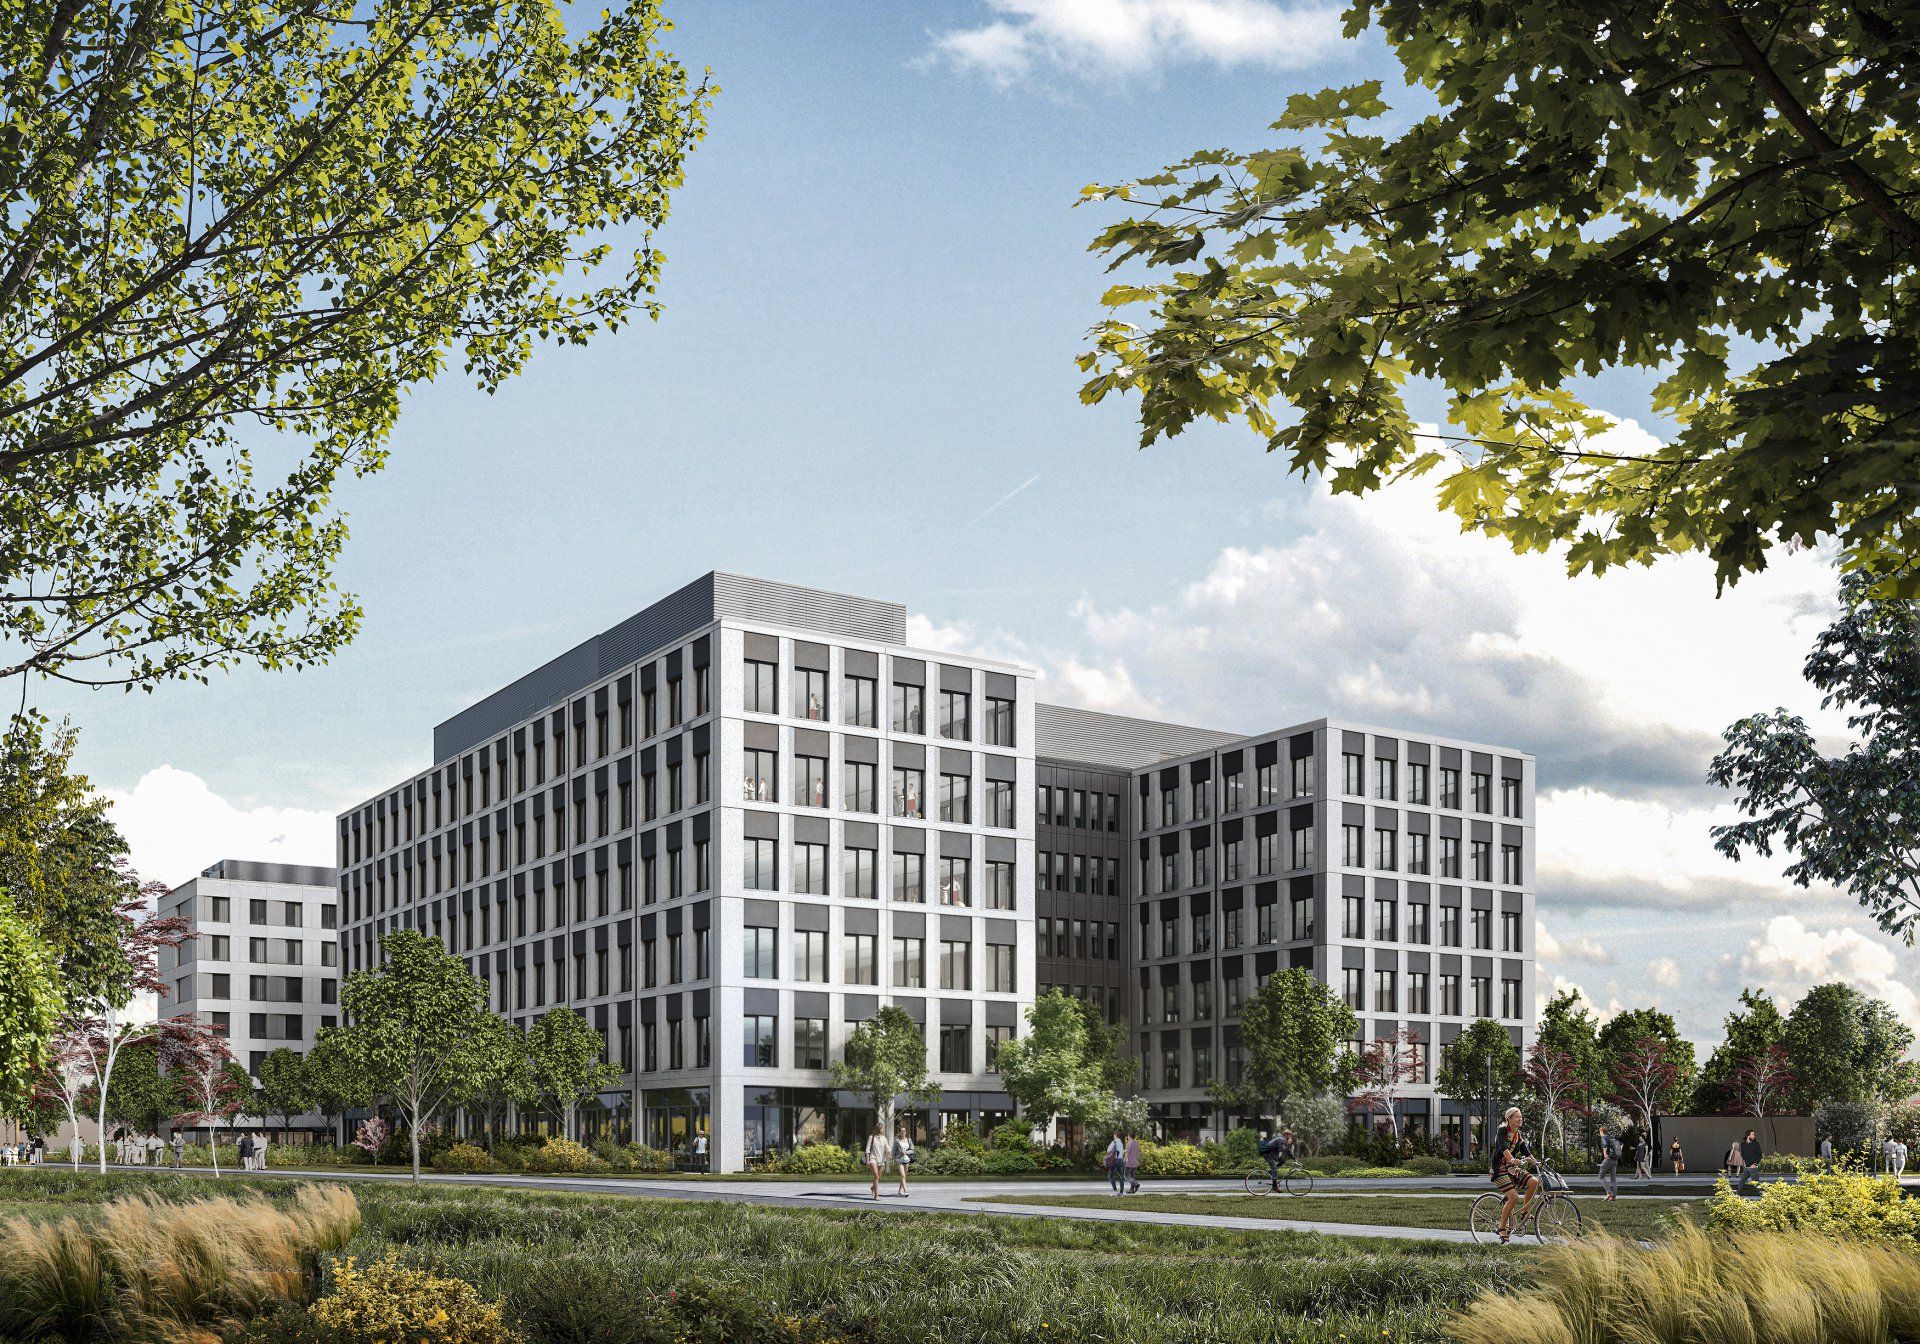 Vastint wybuduje we Wrocławiu nowy biurowiec i hotel. Powstaną obok kompleksu Business Garden